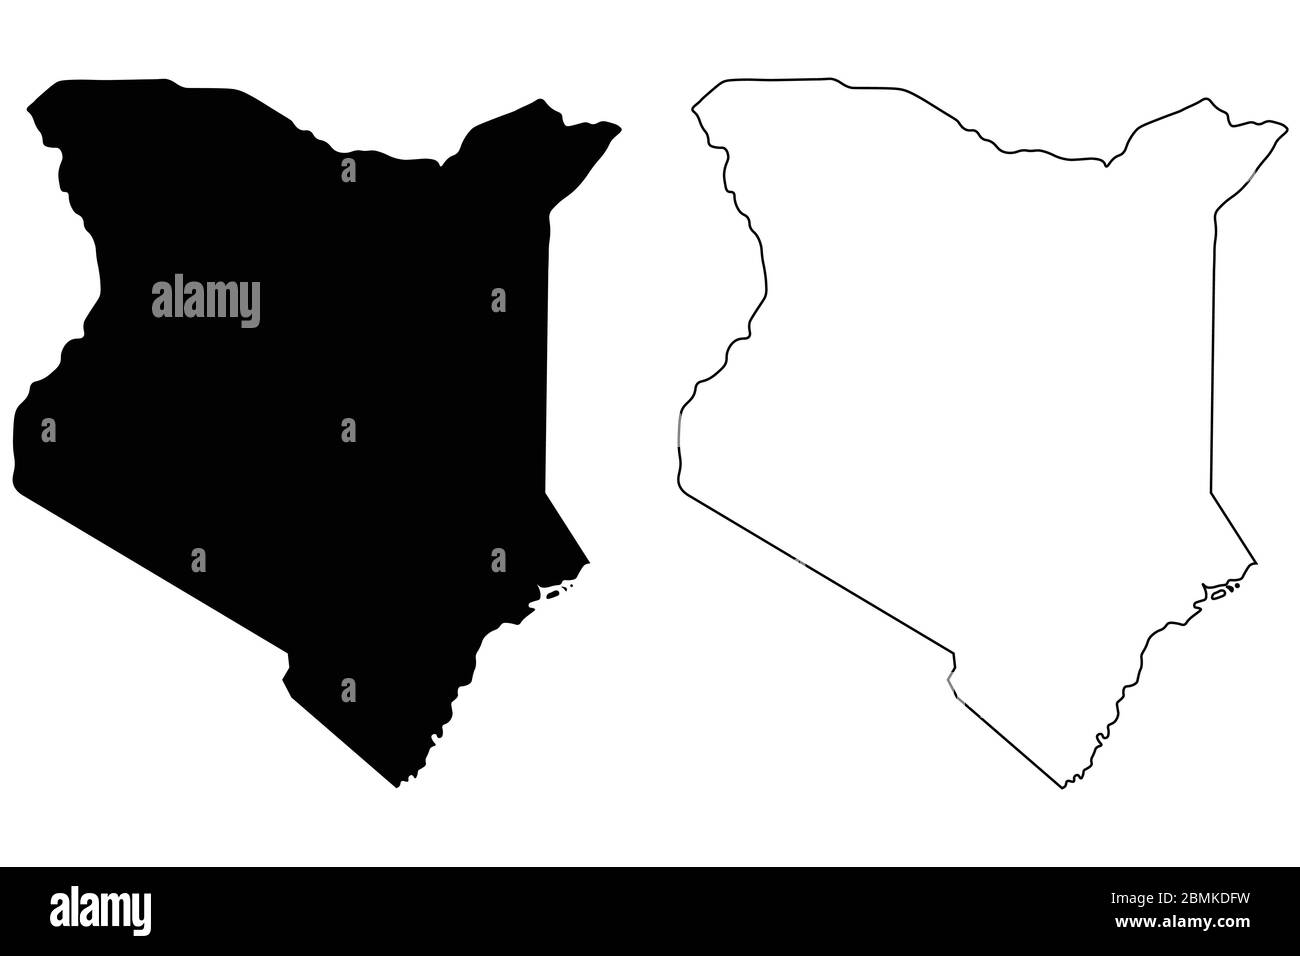 Mappa del Paese del Kenya. Silhouette e profilo neri isolati su sfondo bianco. Vettore EPS Illustrazione Vettoriale